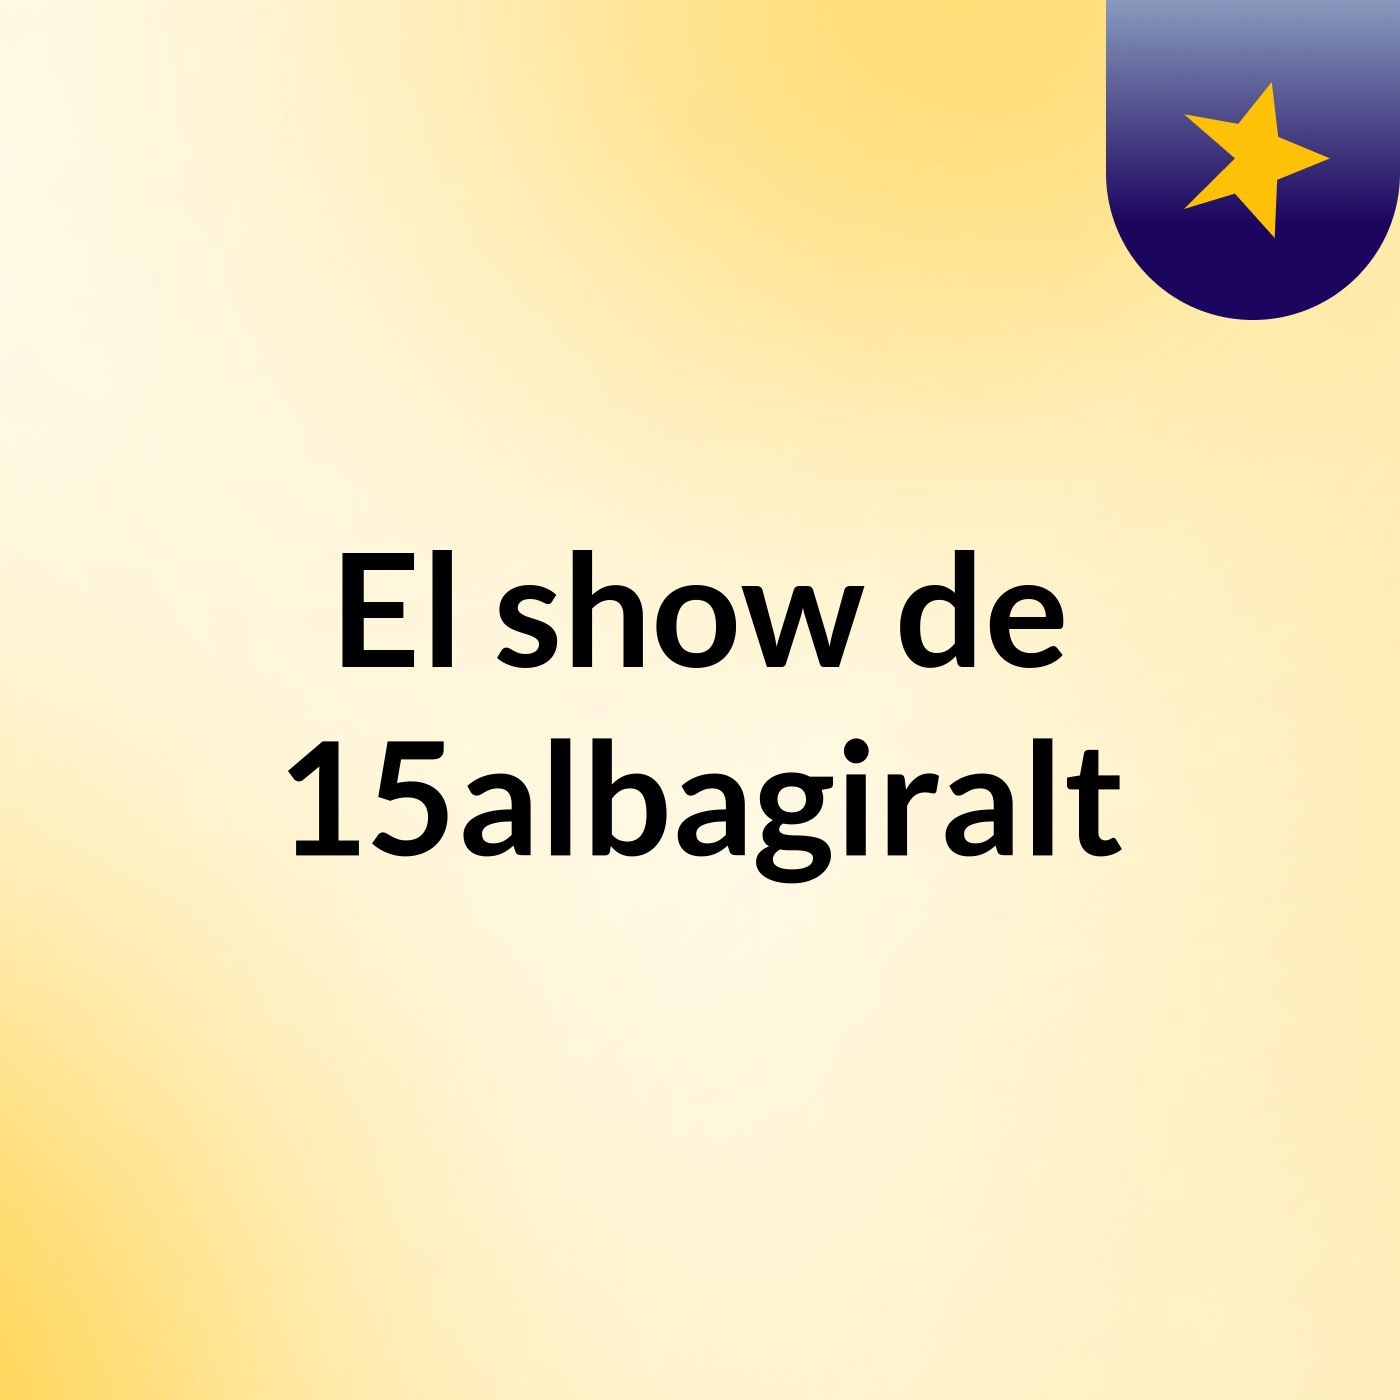 El show de 15albagiralt